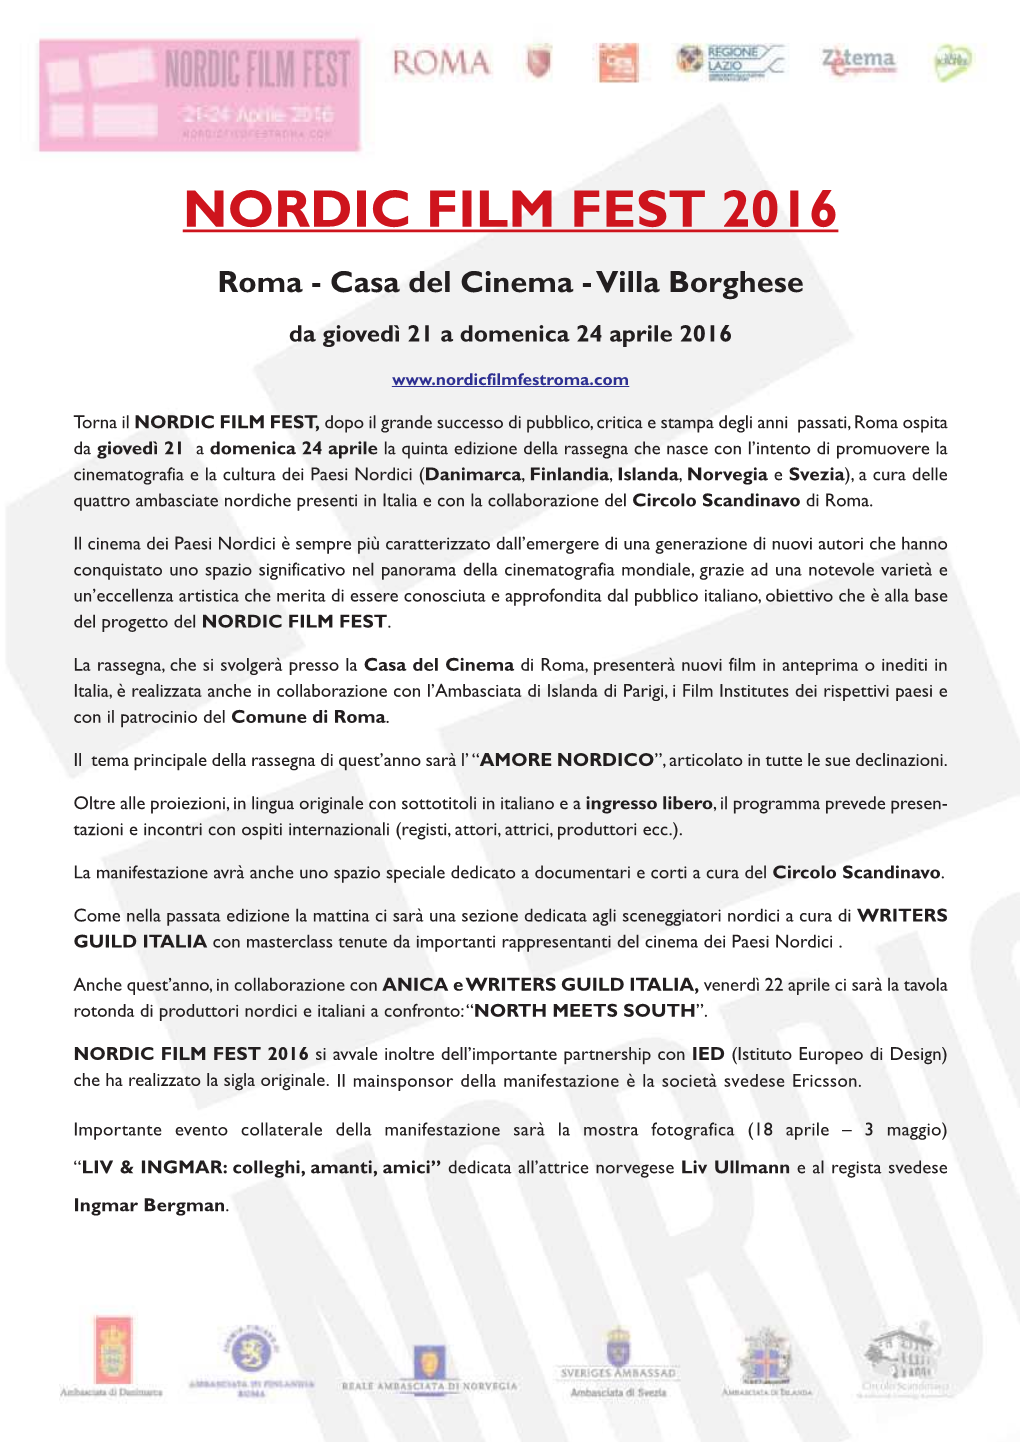 NORDIC FILM FEST 2016 Roma - Casa Del Cinema - Villa Borghese Da Giovedì 21 a Domenica 24 Aprile 2016